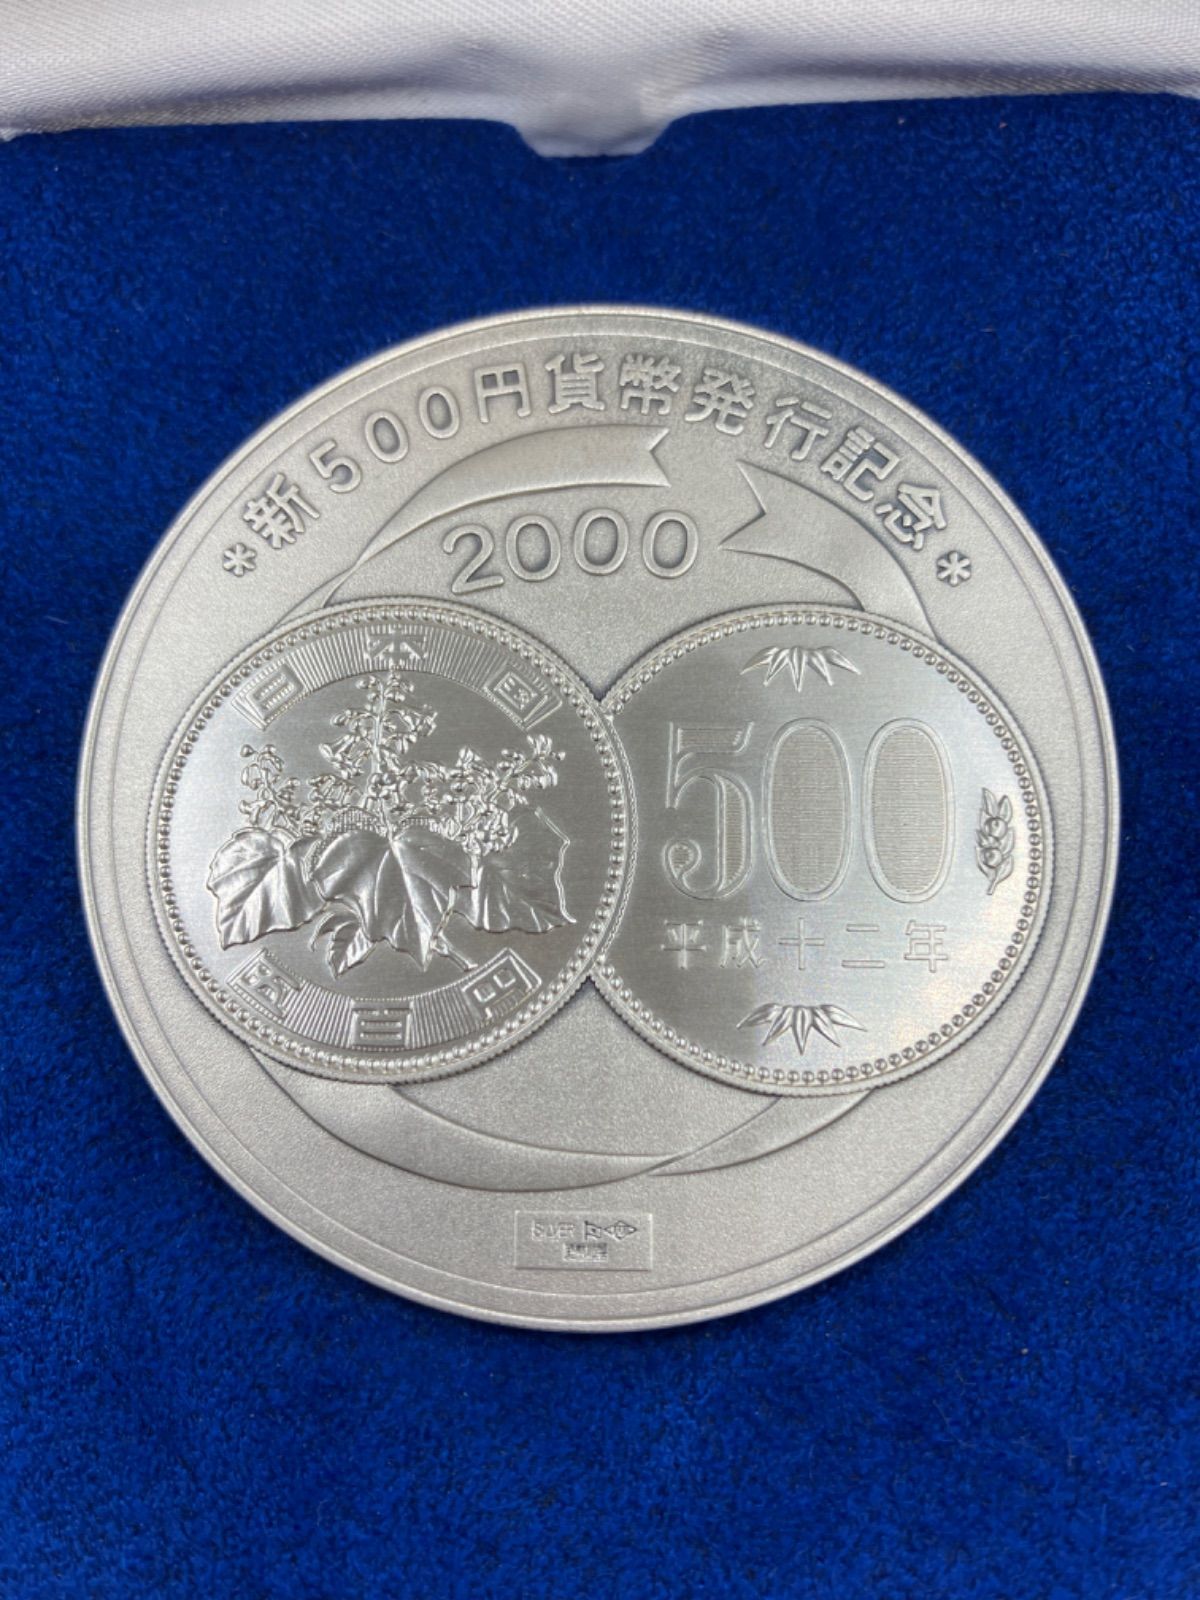 純銀1000量目新500円貨幣発行記念 2000 純銀メダル - その他